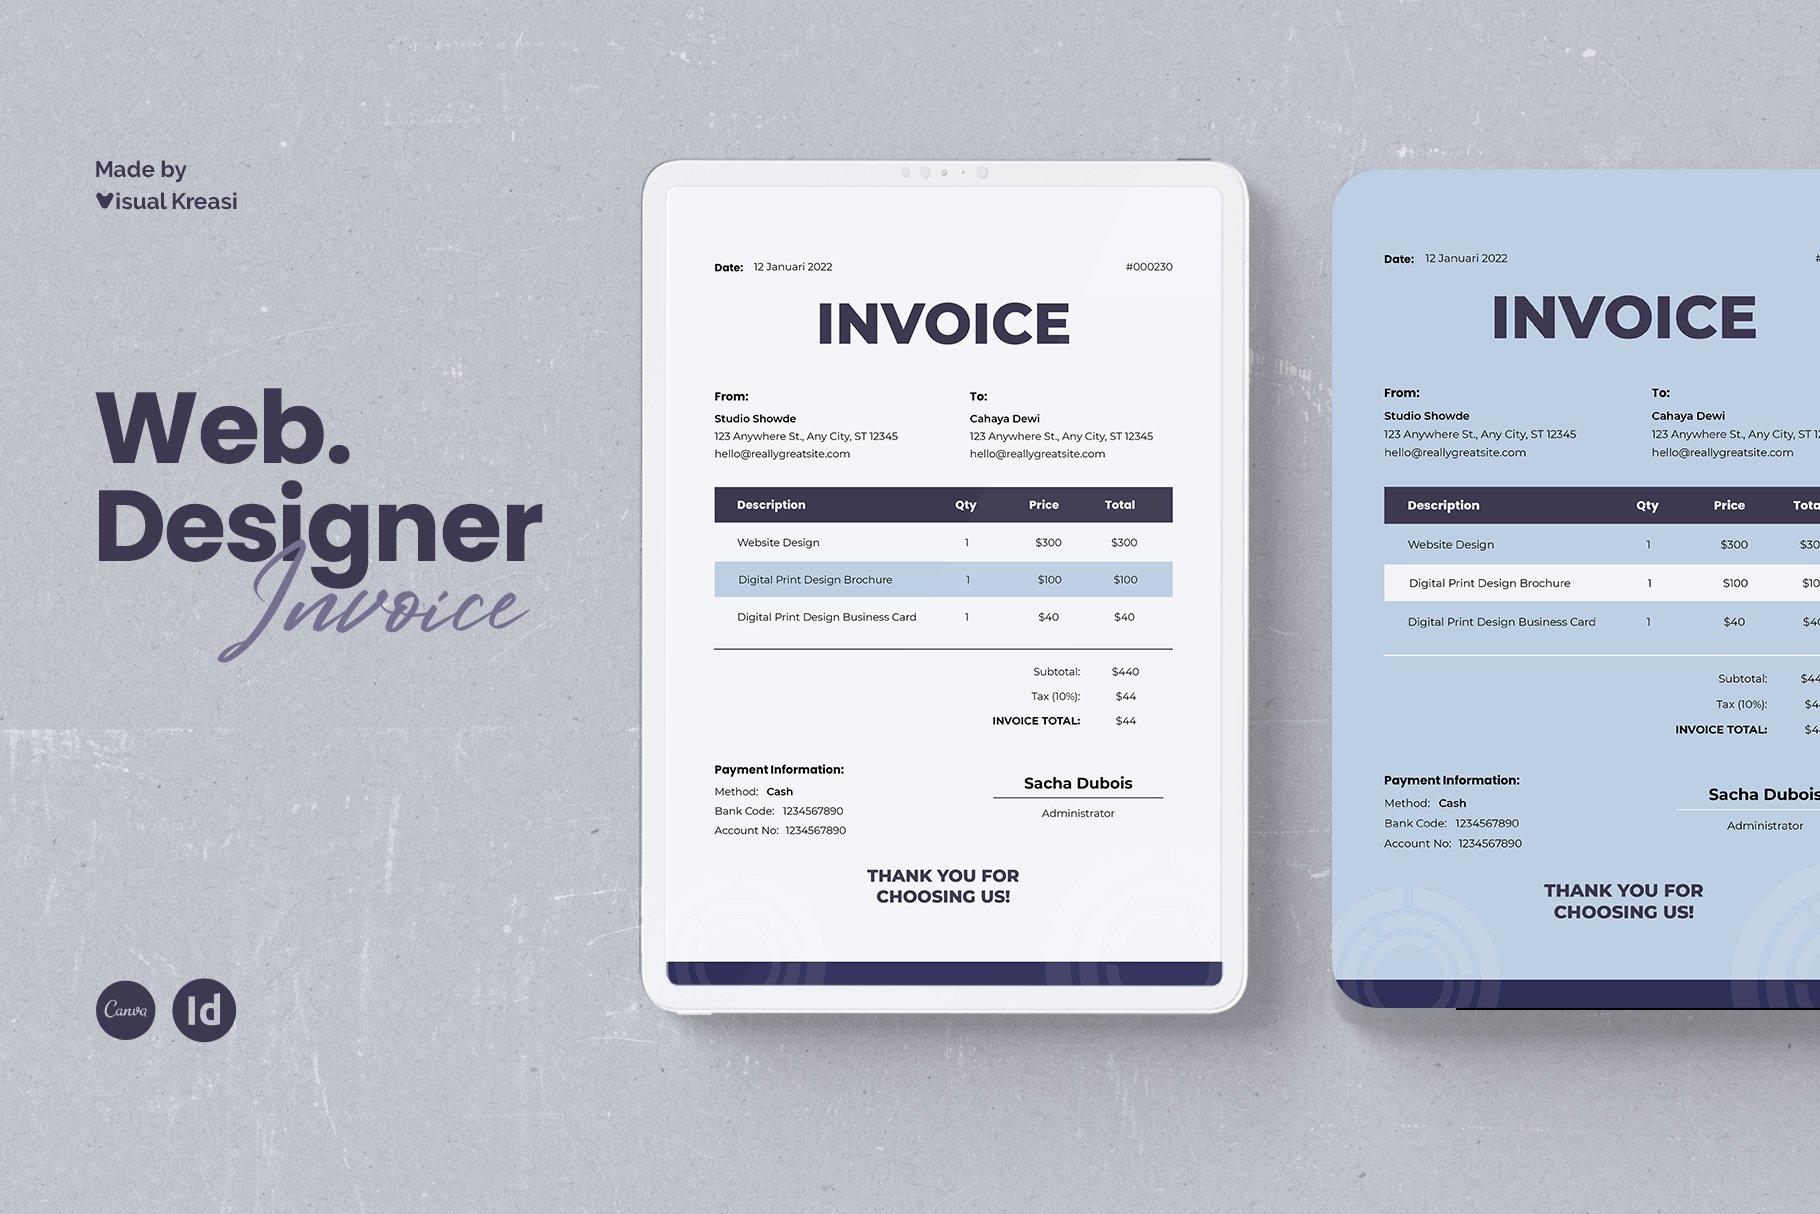 Web Designer Invoice Template cover image.